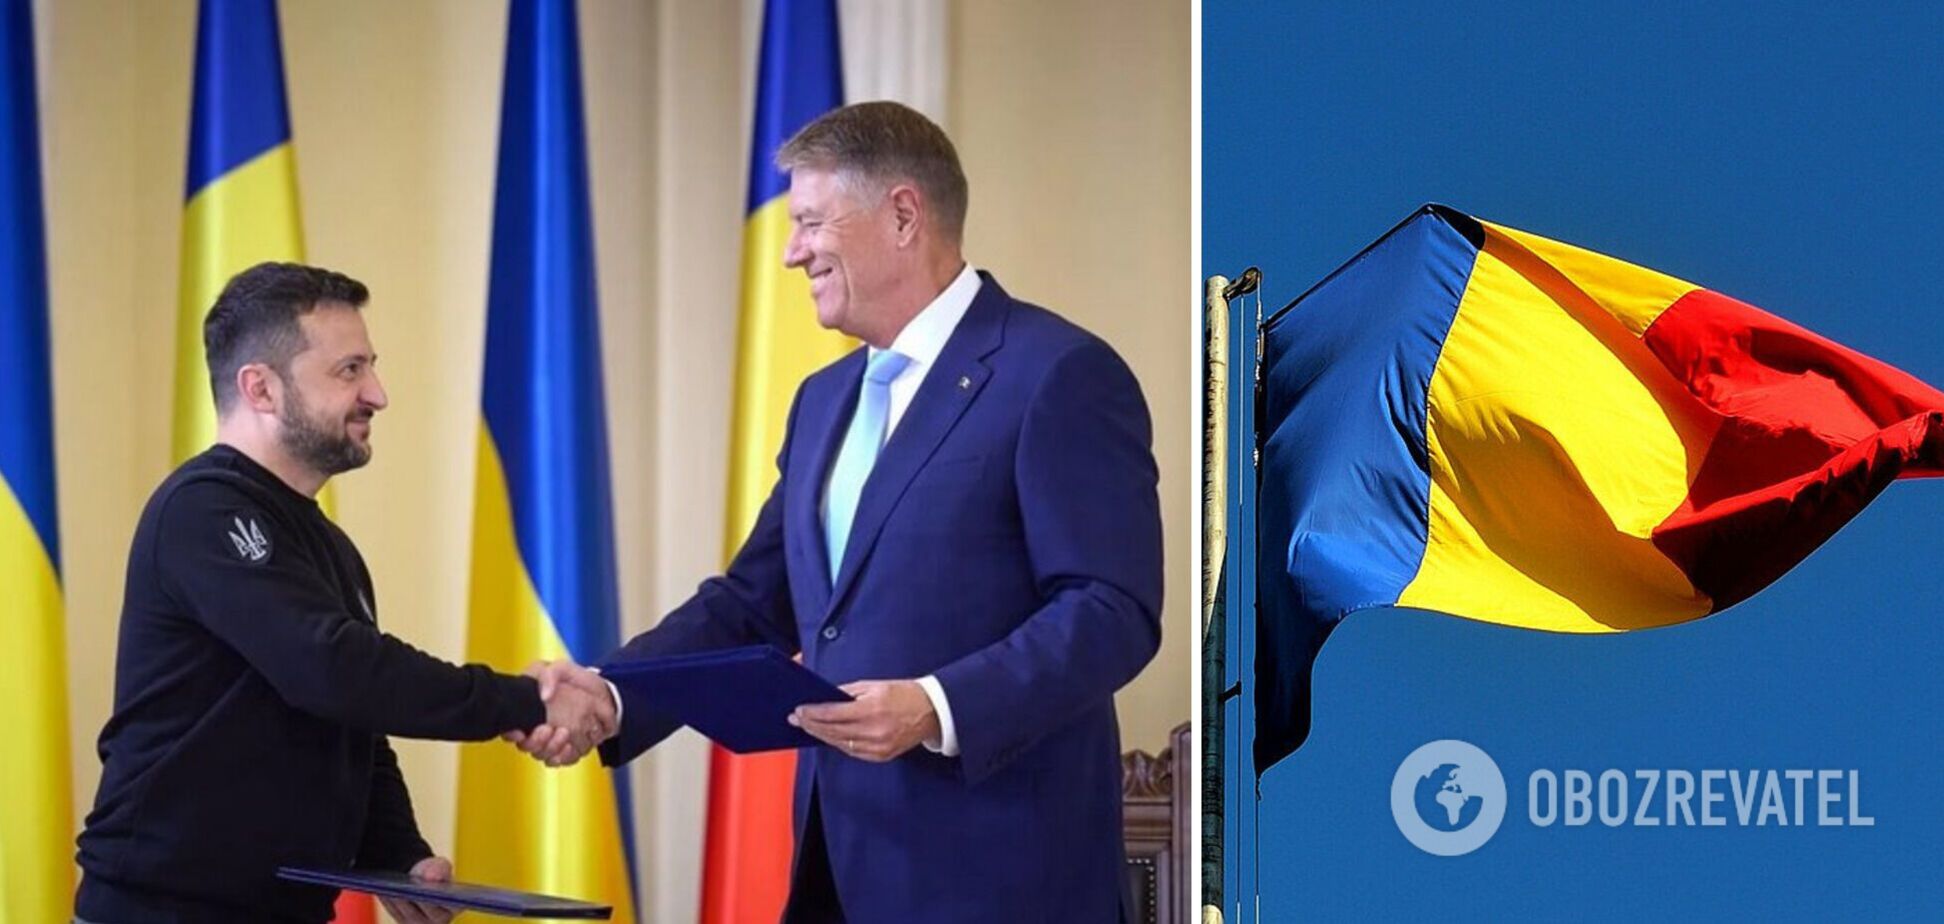 'Очень плодотворный визит в Румынию': Зеленский анонсировал новые украино-румынские проекты. Видео